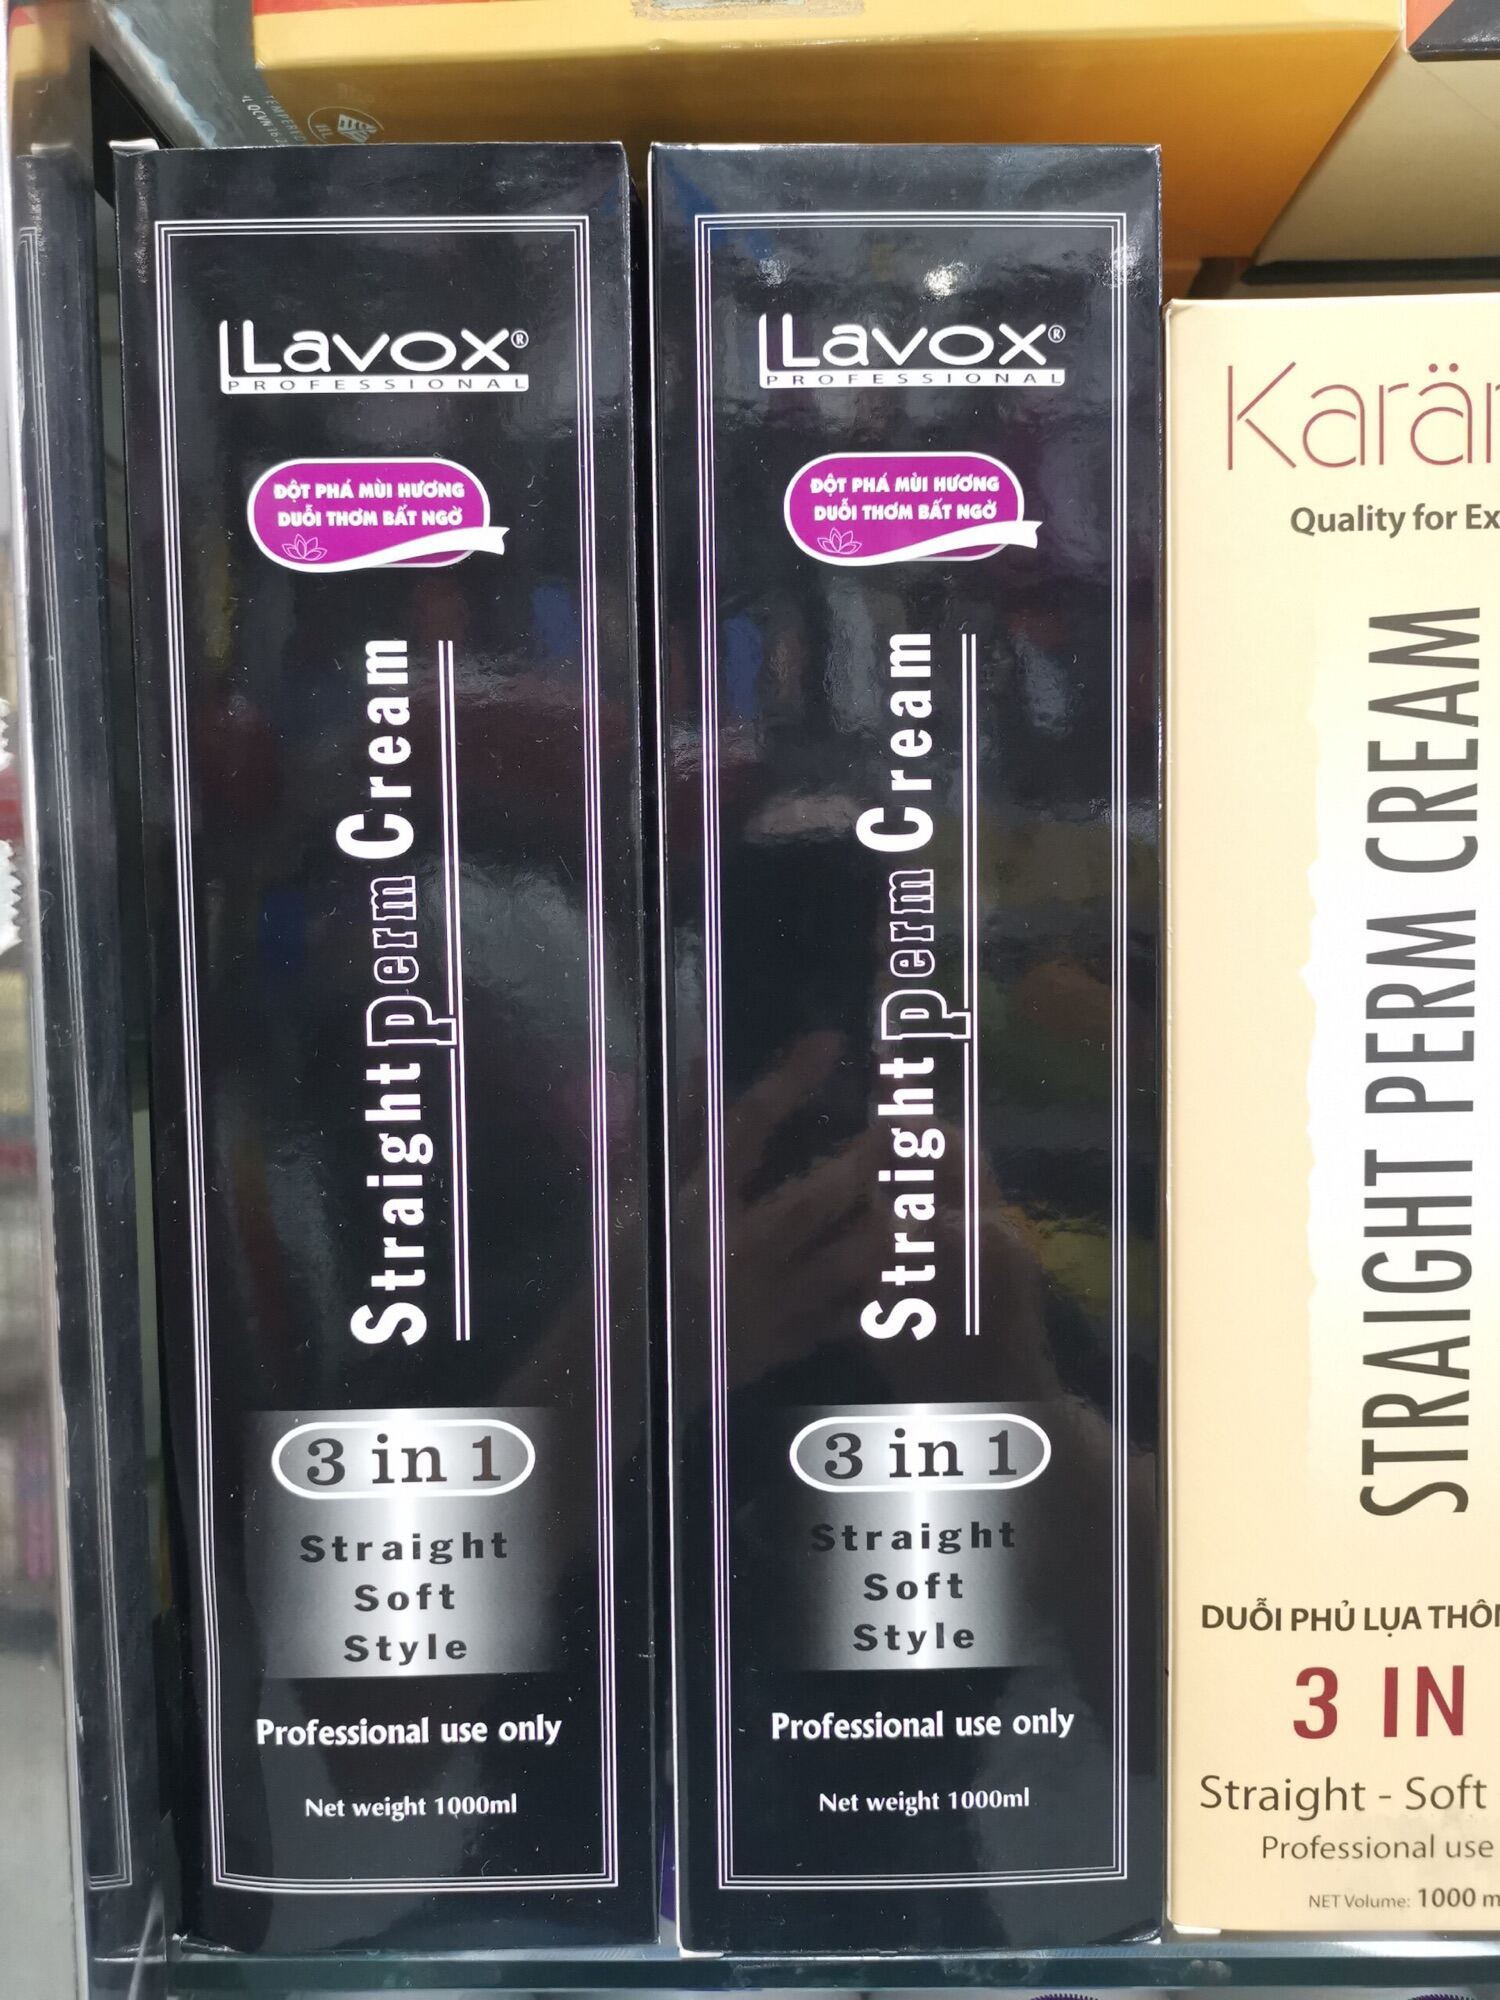 Với sản phẩm Lavox 3 in 1, bạn sẽ có một mái tóc tuyệt đẹp. Sản phẩm giúp duỗi tóc, tạo kiểu tóc và bảo vệ tóc tối đa. Với thành phần tự nhiên, Lavox 3 in 1 không gây hại cho tóc và da đầu. Hãy trải nghiệm sản phẩm để có một mái tóc mềm mại và bồng bềnh như ý muốn.